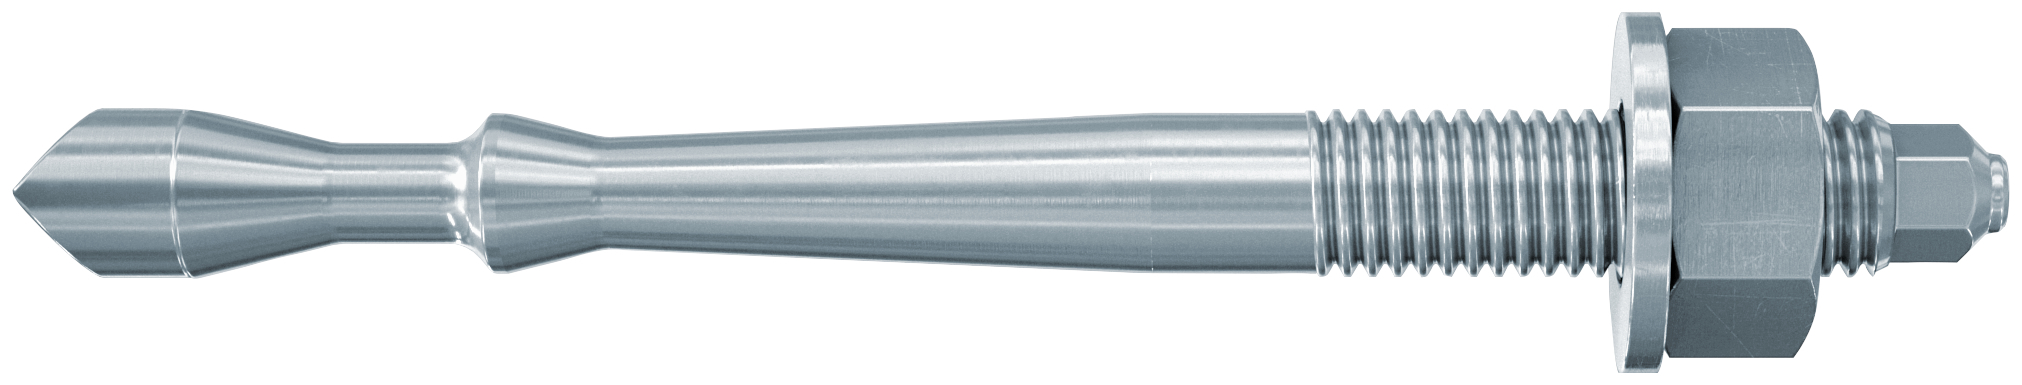 fischer Barra multicono in acciaio FHB II-A S M10x60-60 per ancorante chimico FIS HB (1 Pz.) Barra multicono corta in acciaio zincato classe 8.8. Massime prestazioni a trazione in calcestruzzo fessurato e a ridotte distanze dai bordi. fie1173